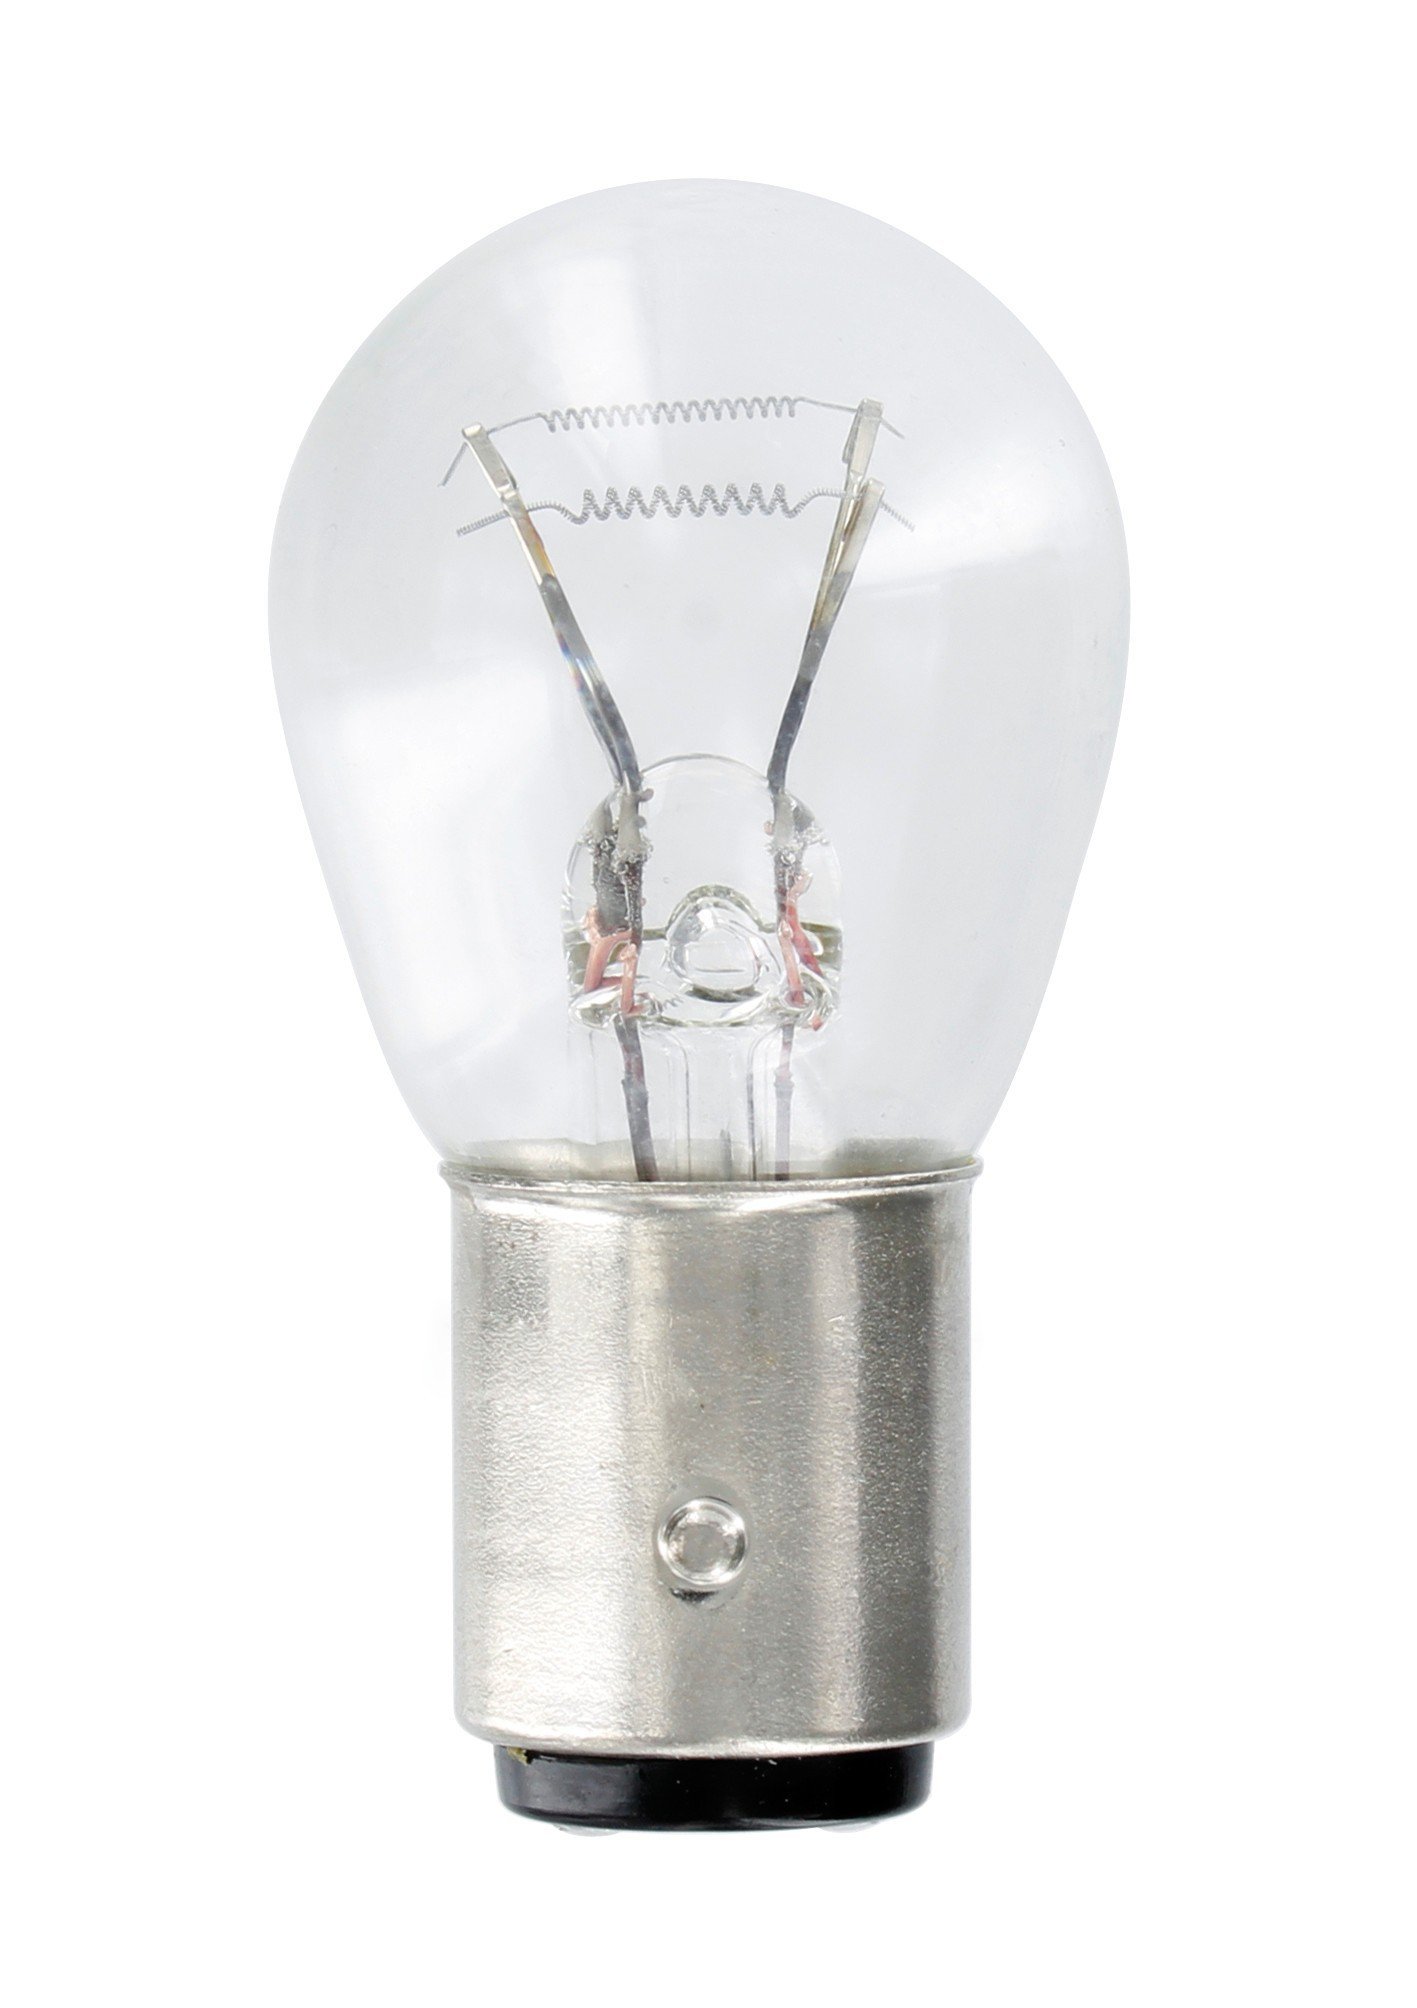 Incandescent bulb OSRAM ORIGINAL 12V P21/5W 21/5W 